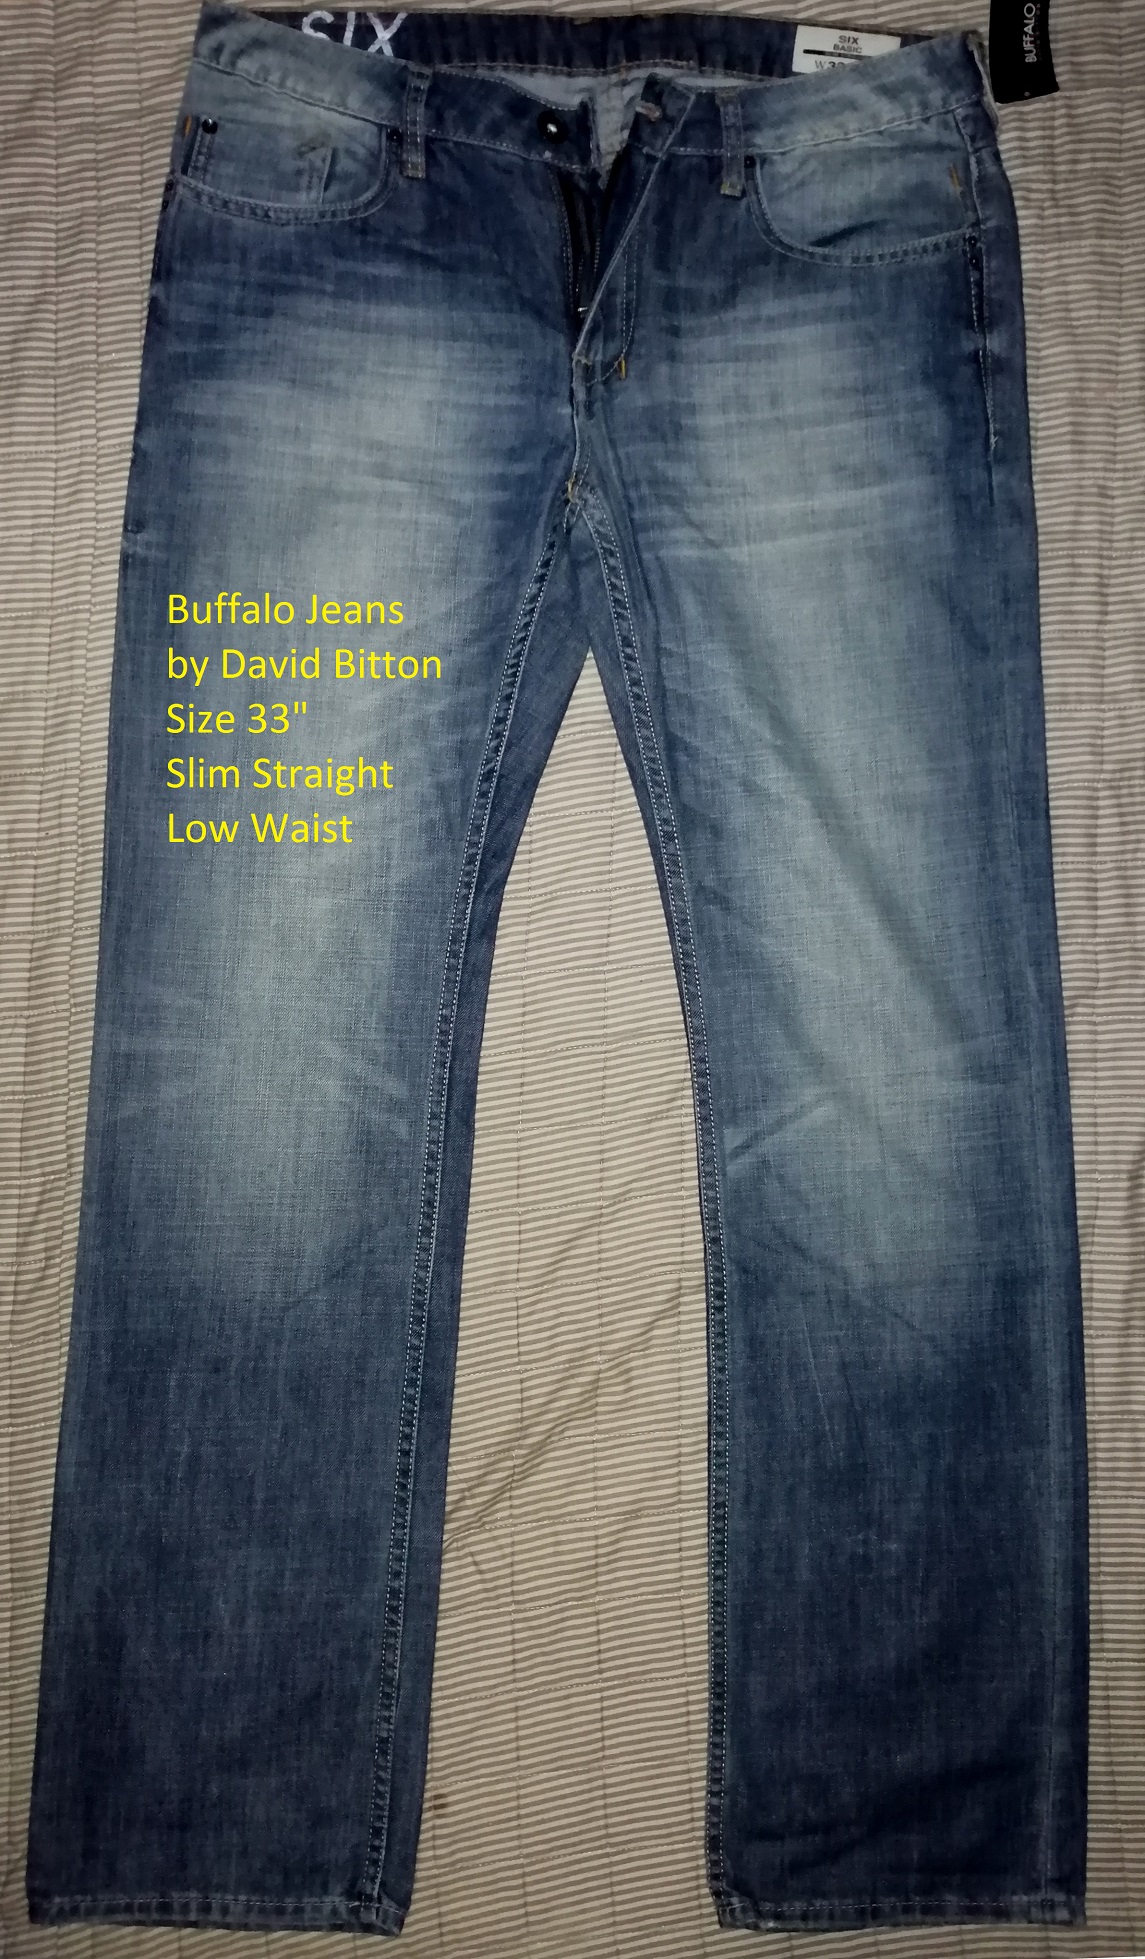 buy buffalo jeans online